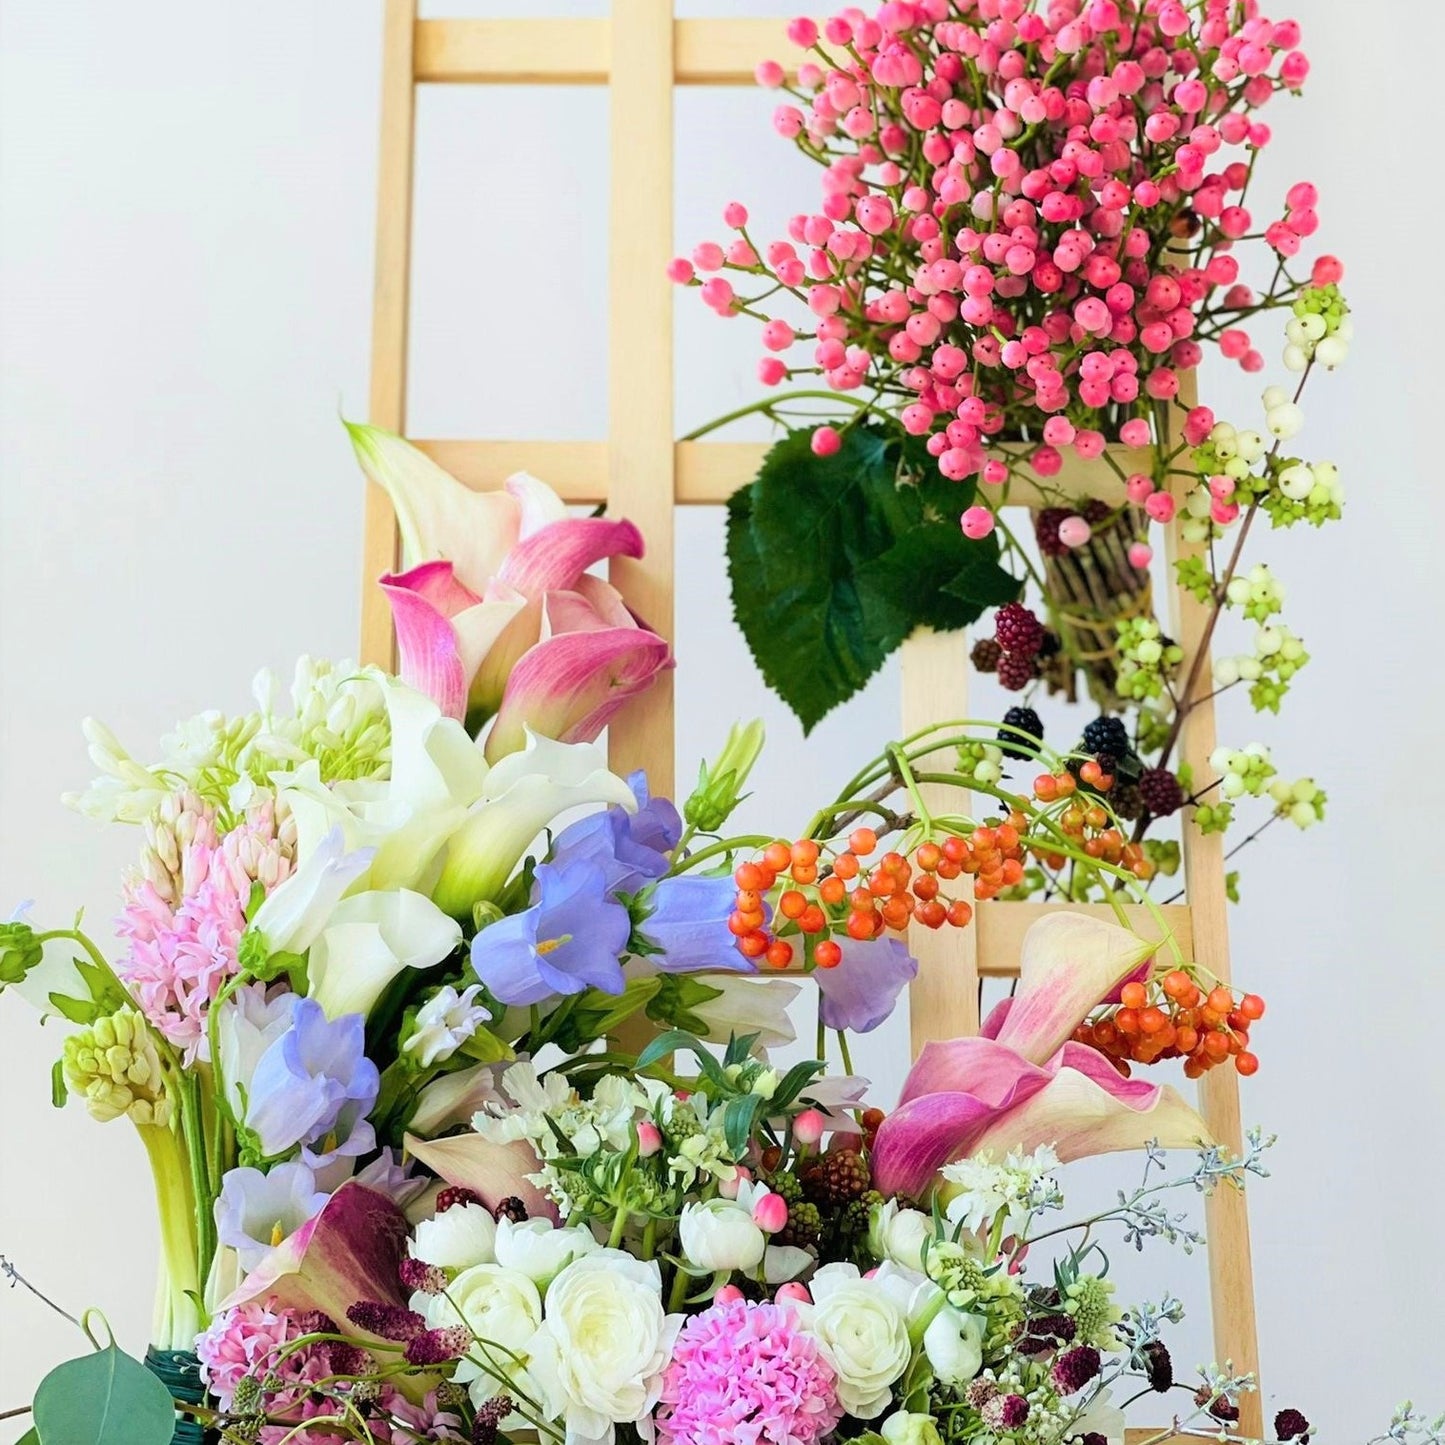 The Designer Florist's Flower Bouquet